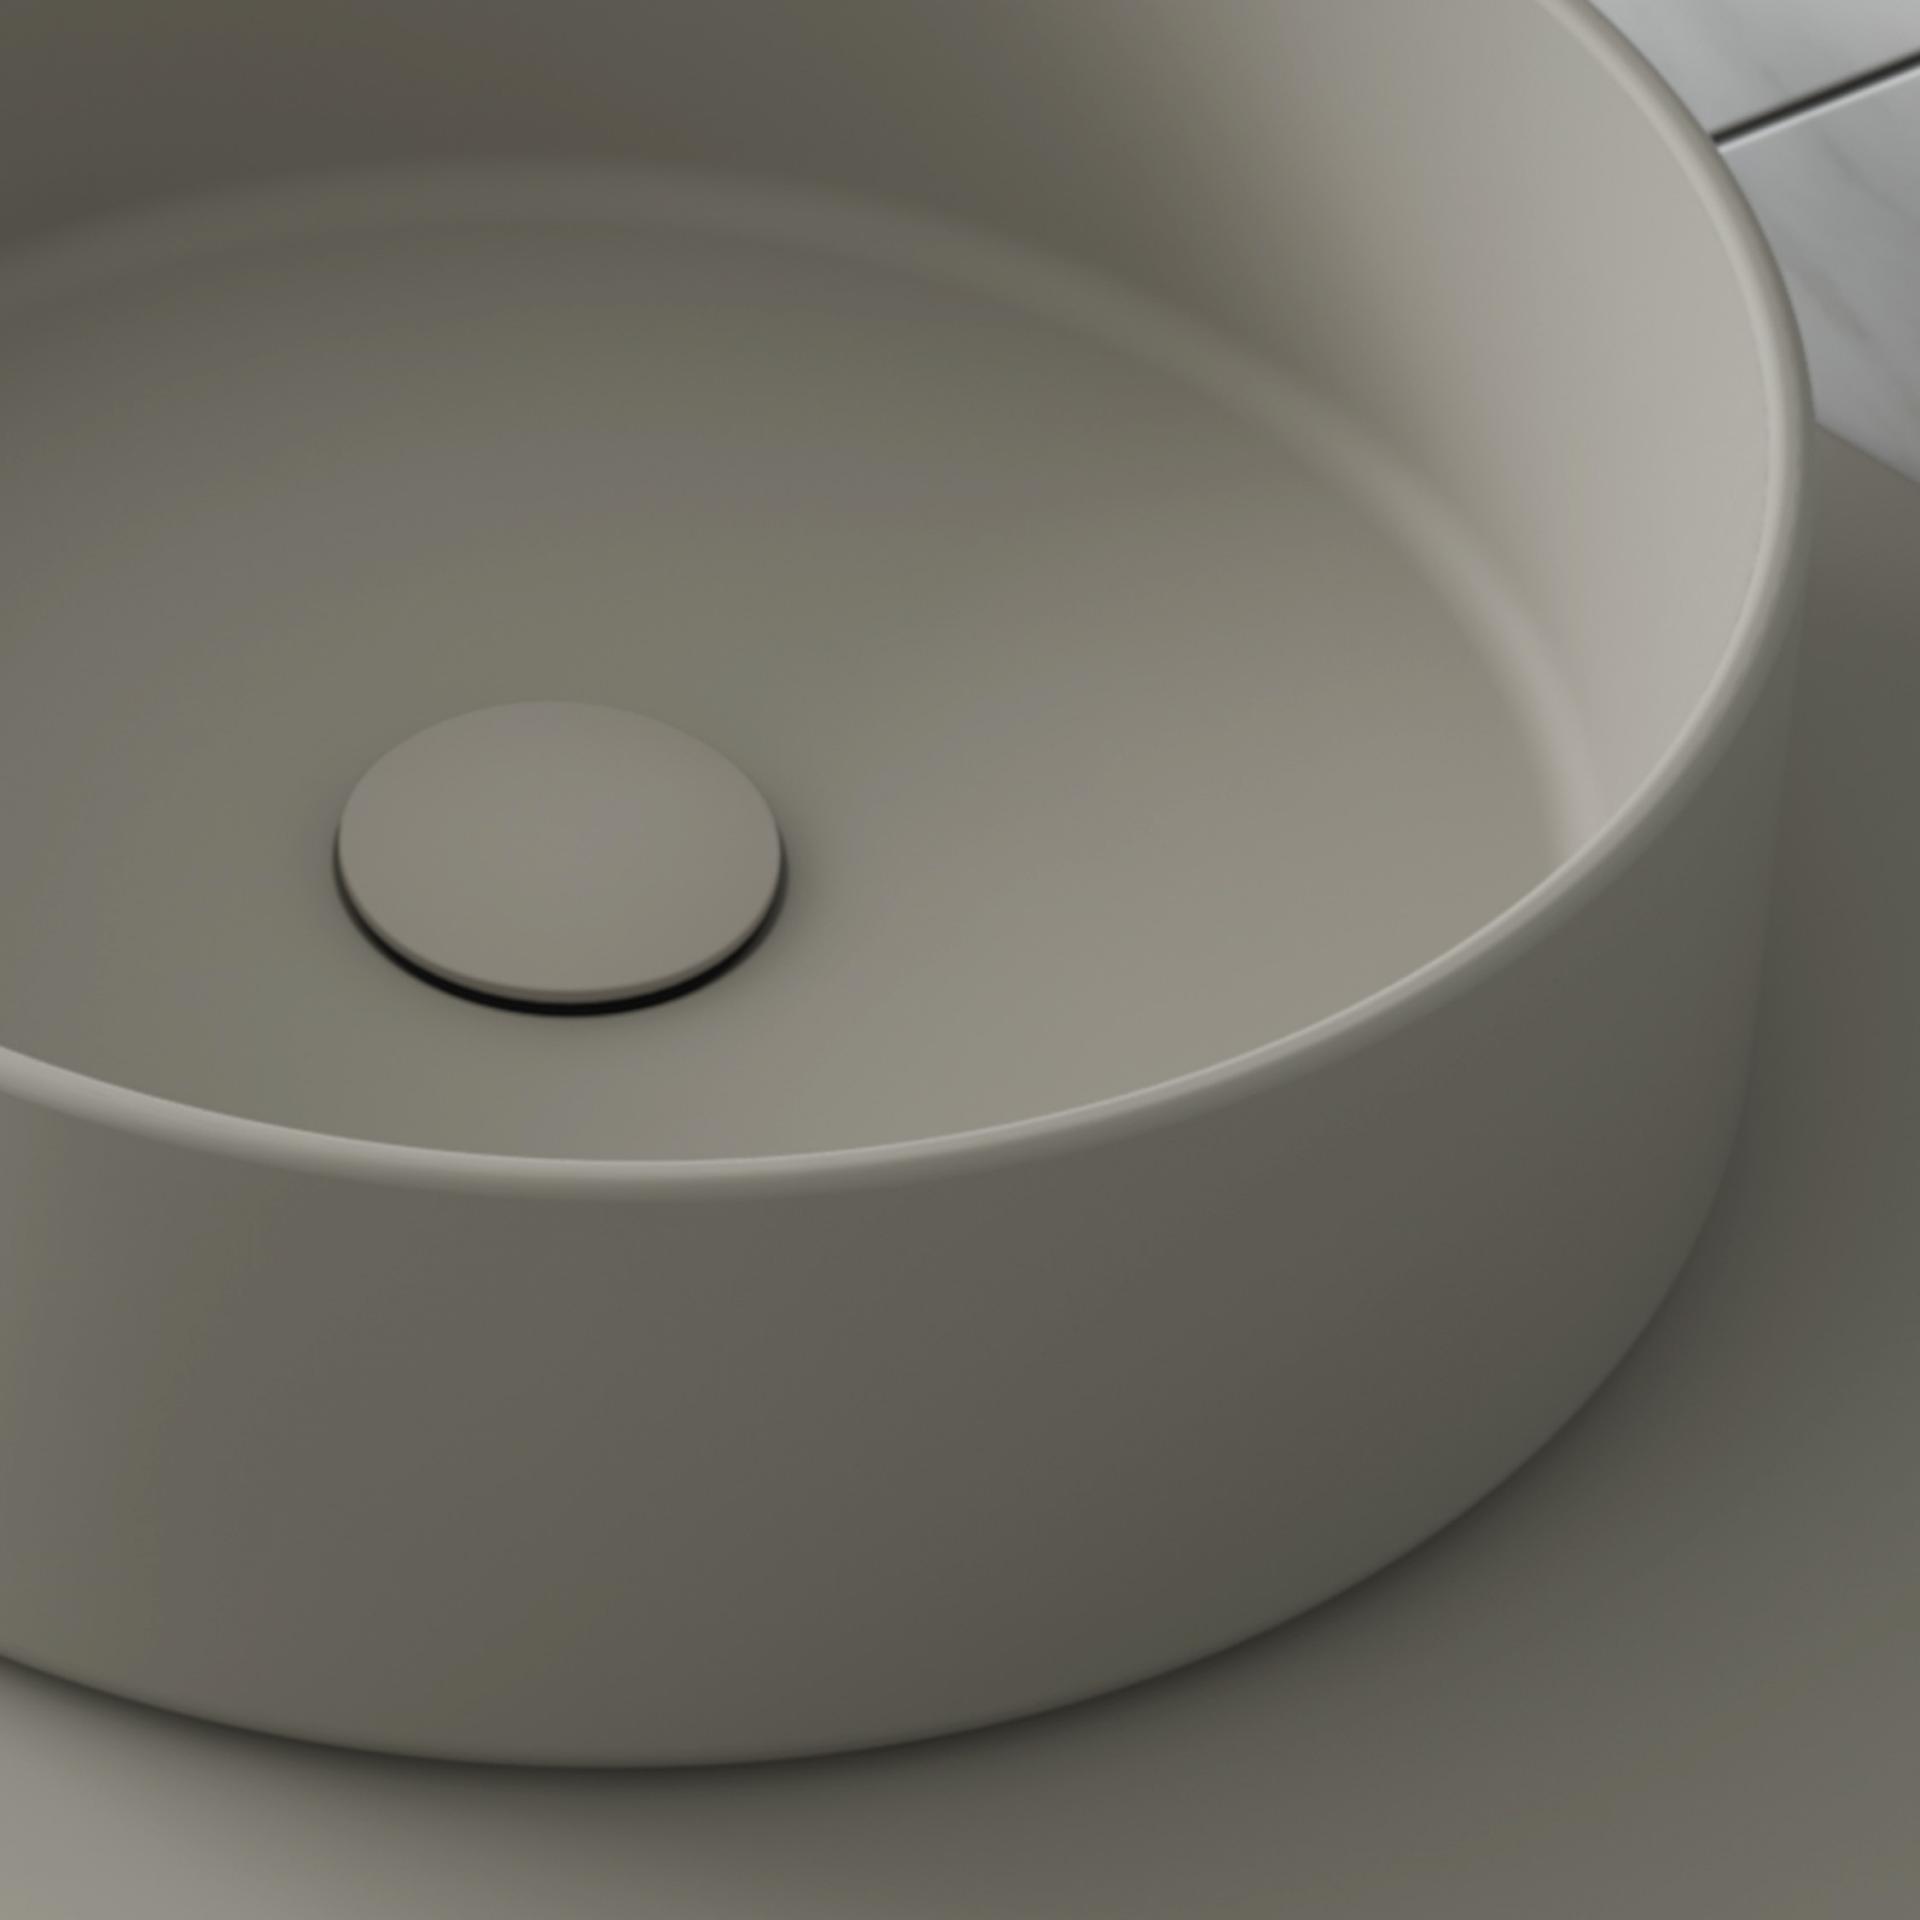 Válvula para lavabo CLICK-CLAC de ROYO al mejor precio online garantizado.